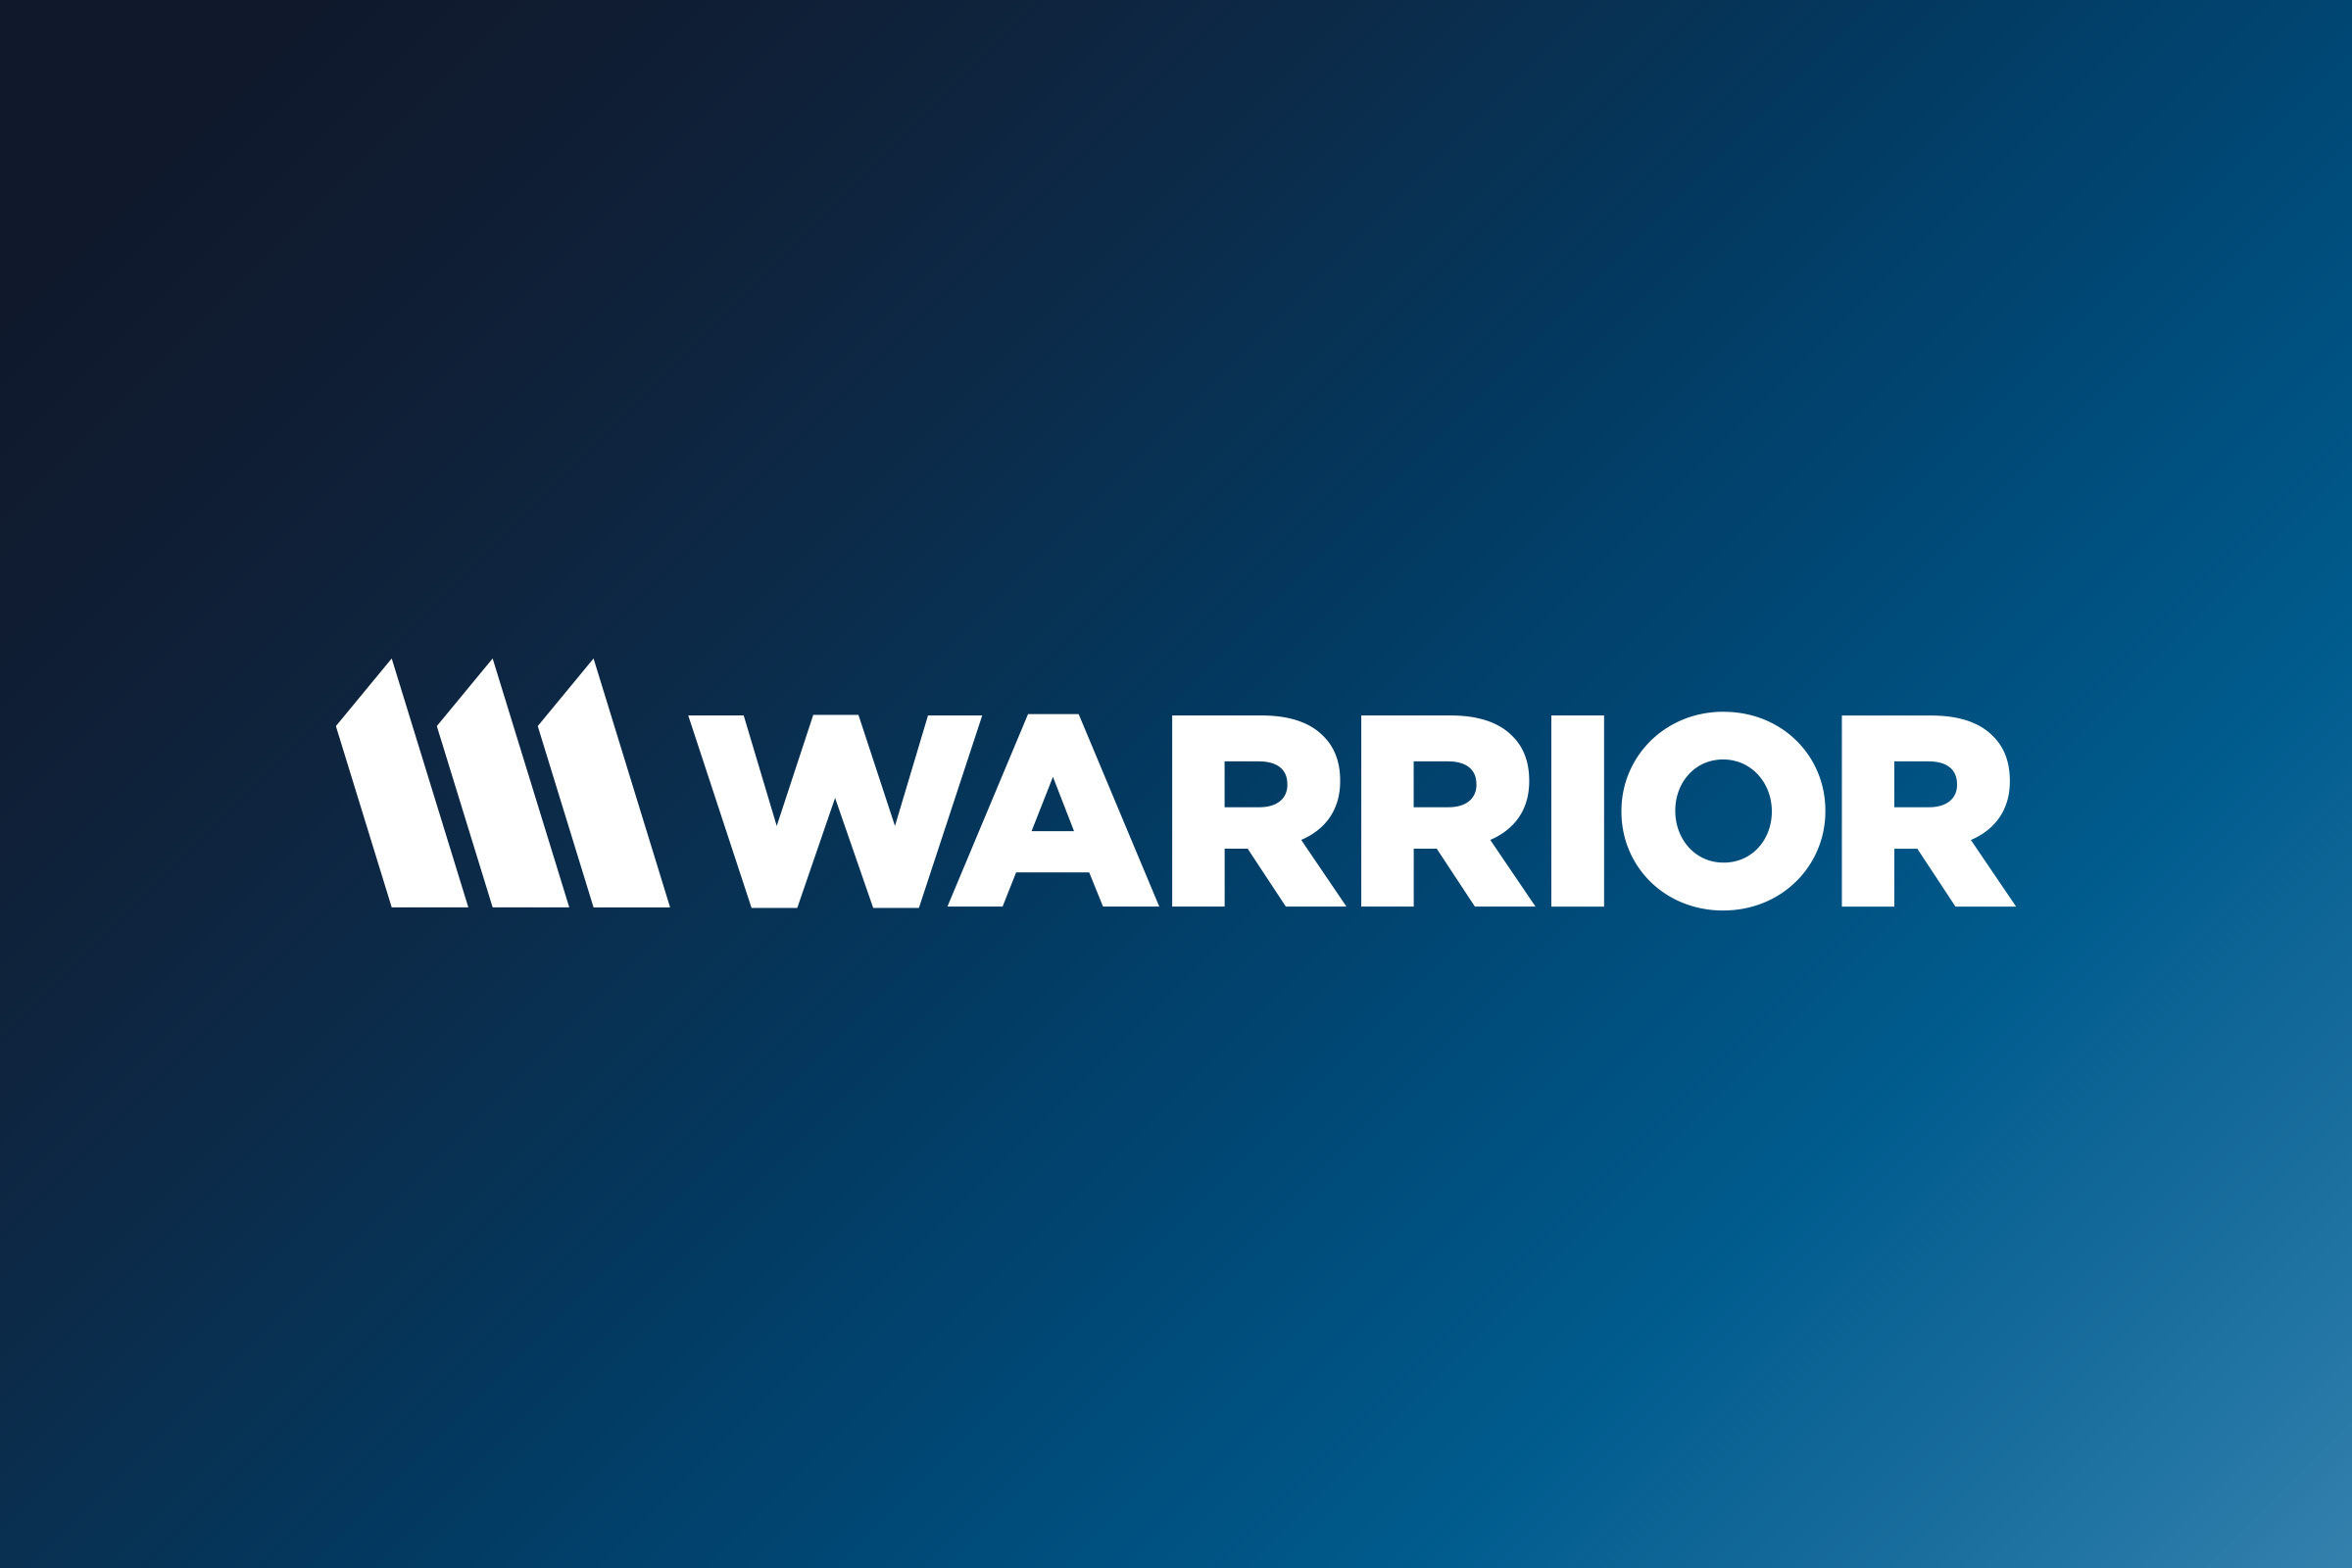 Warrior Met Coal, Inc.